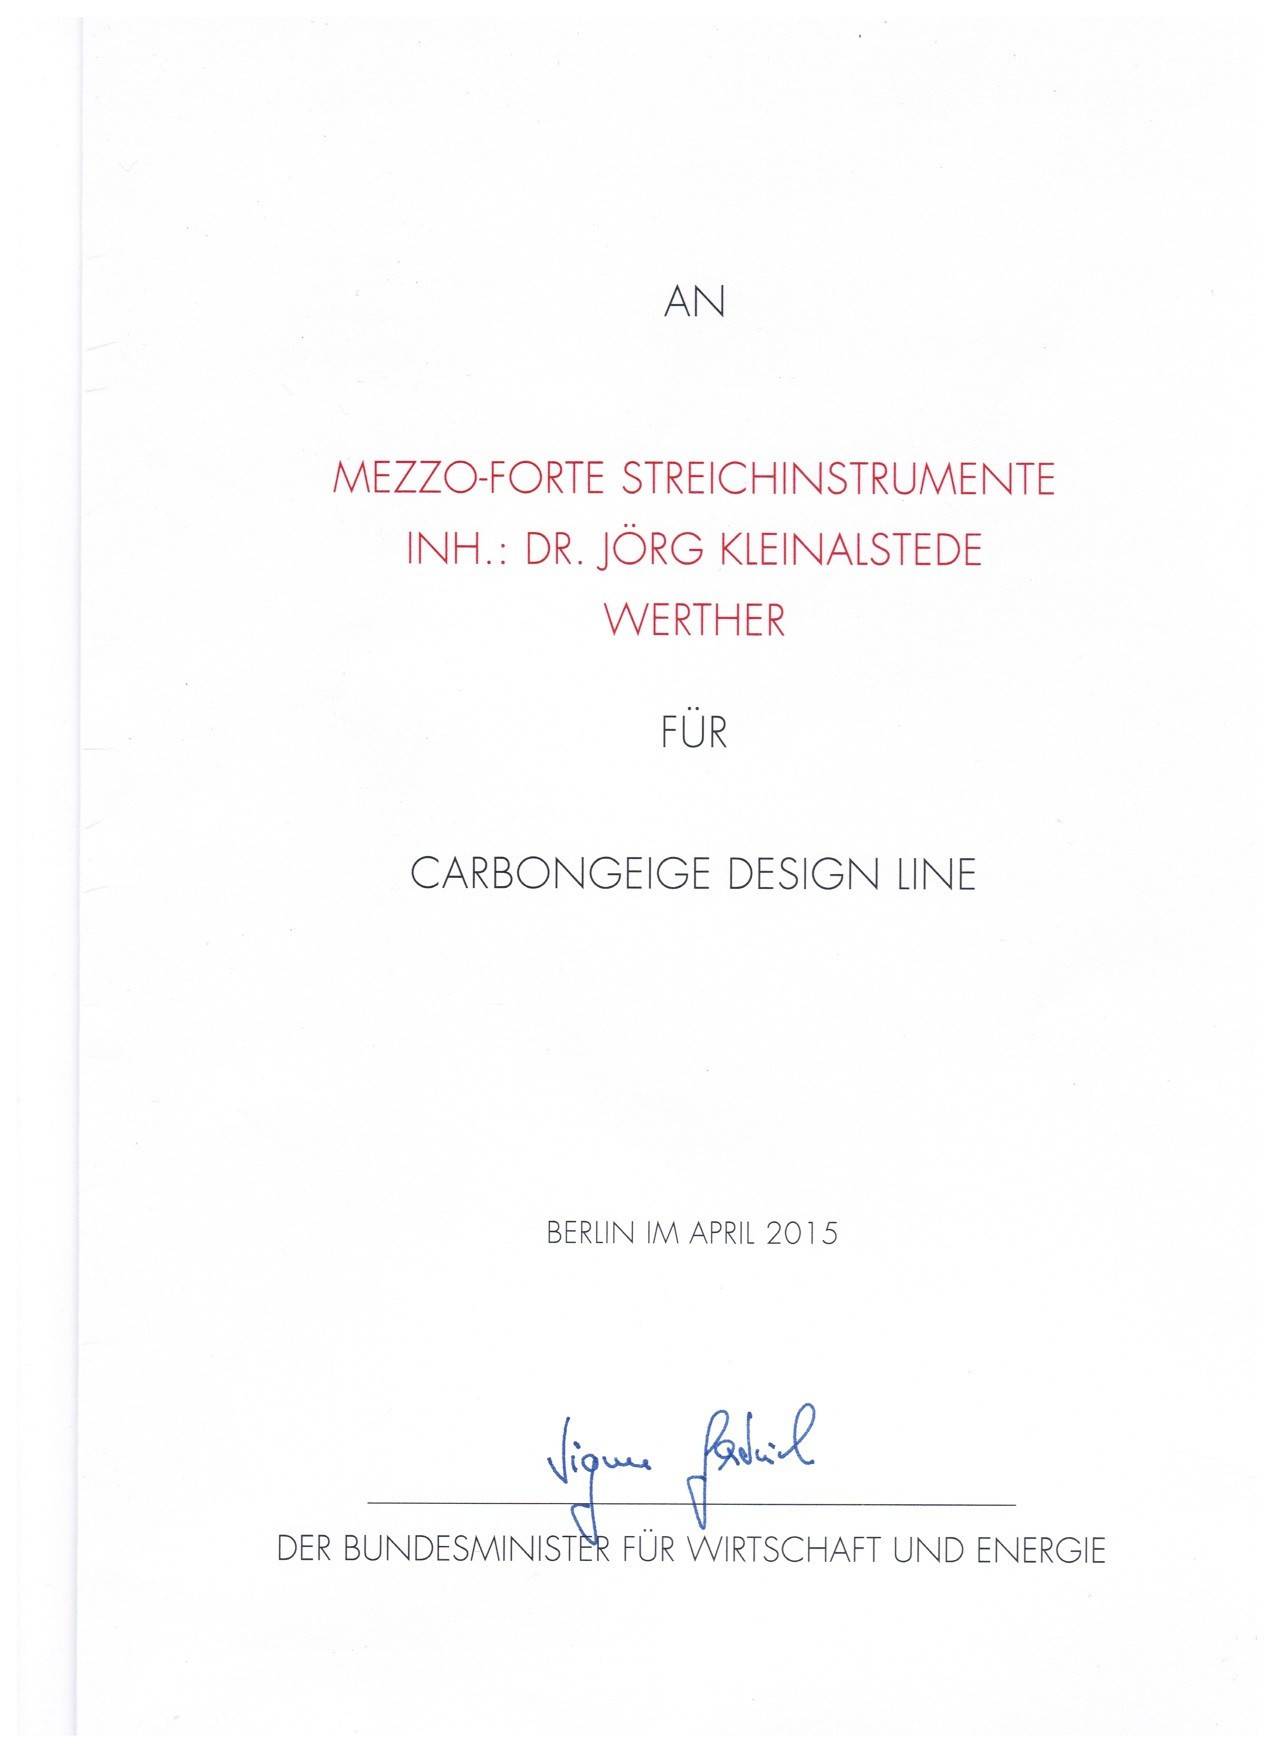 Carbonvioline "Premium Line" Deutscher Musikinstrumentenpreis 2015